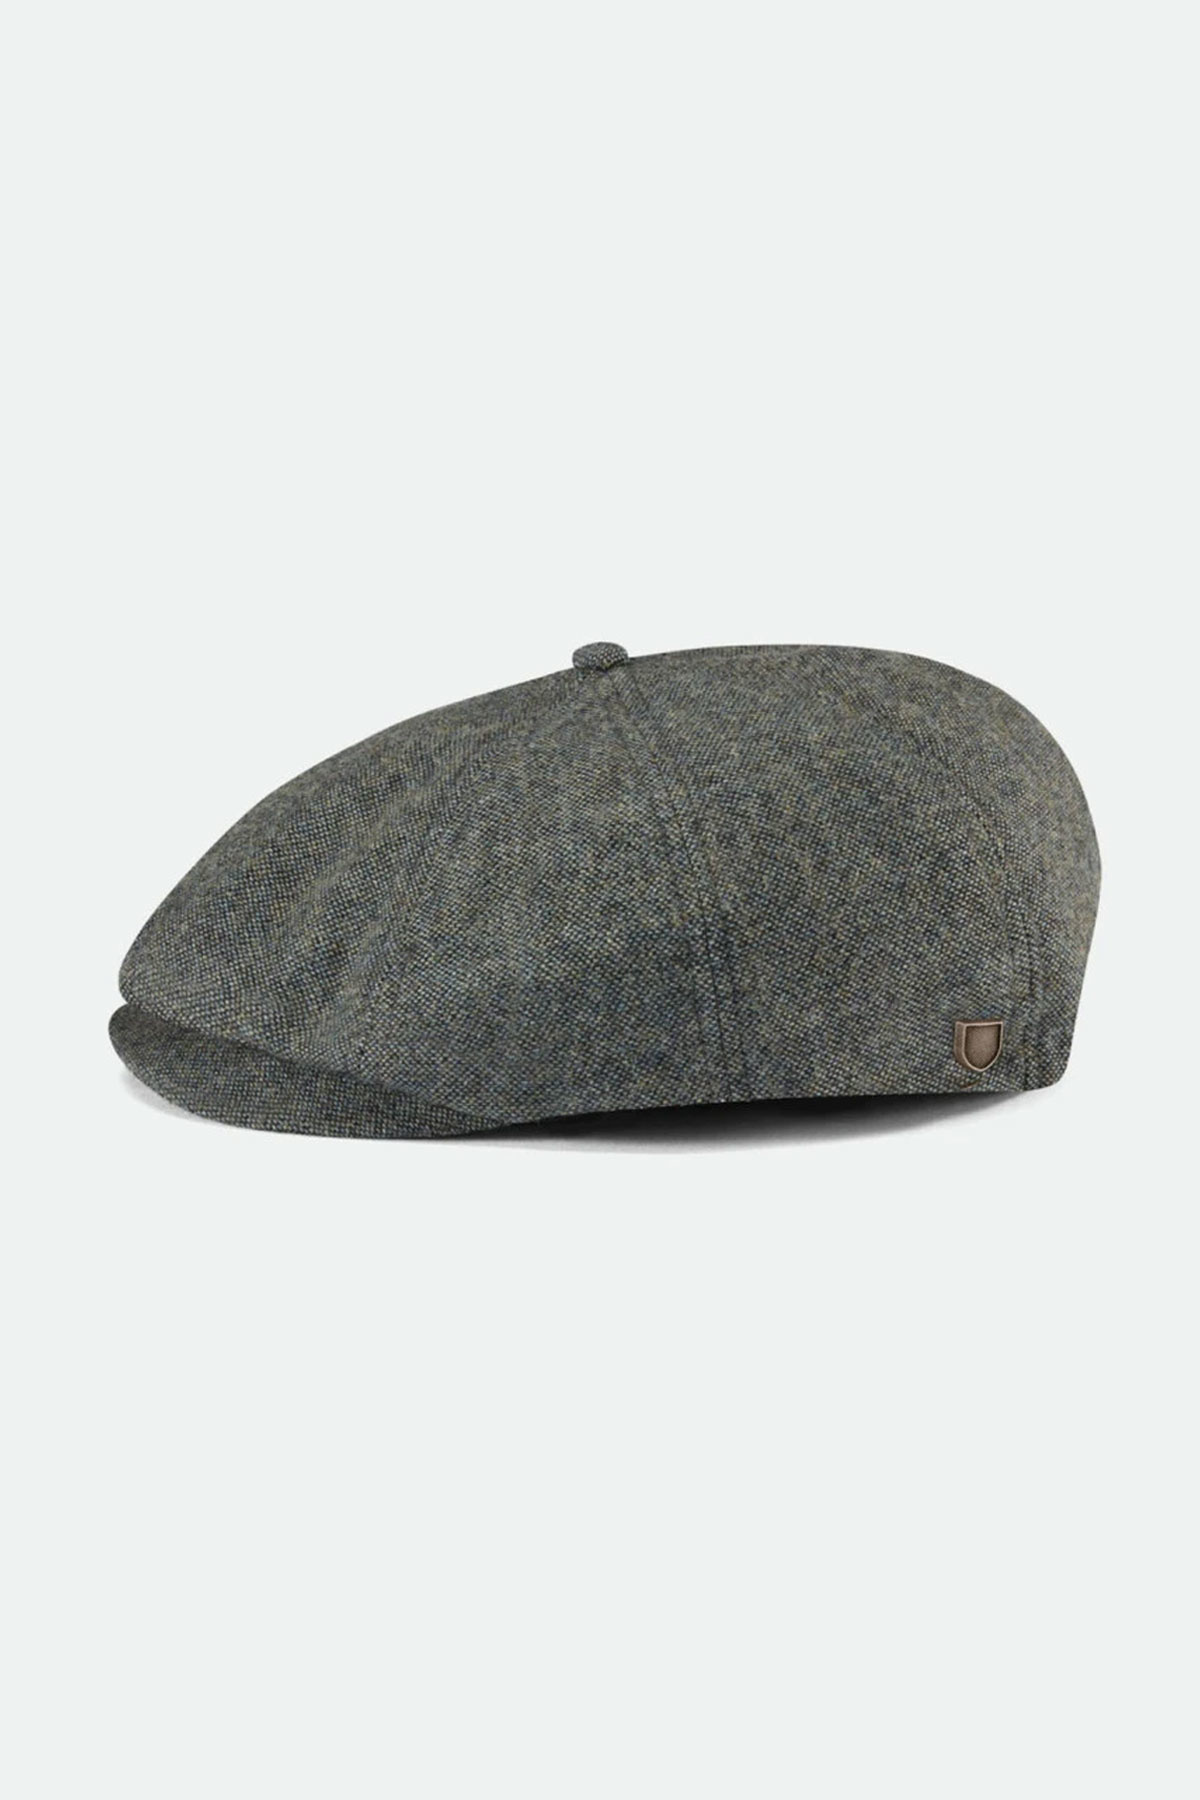 Brixton Snap Cap Roxann's Hats of Fort - Roxanns Hats Fort Langley